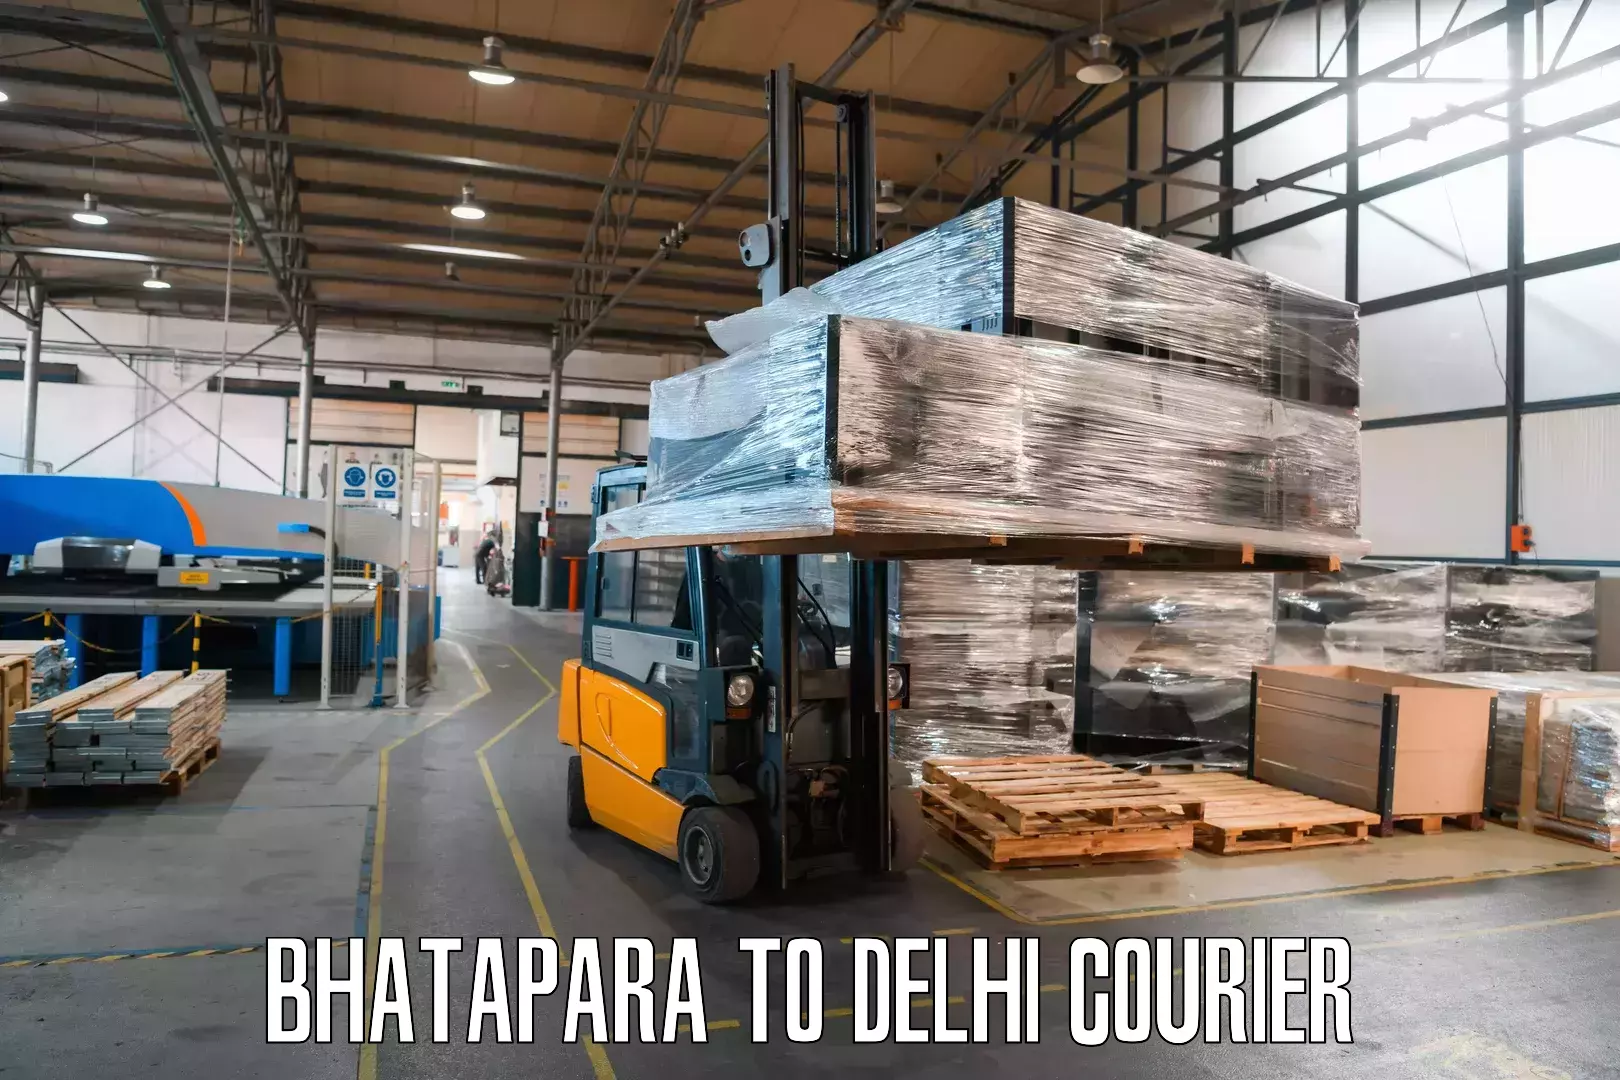 Customer-centric shipping Bhatapara to Krishna Nagar